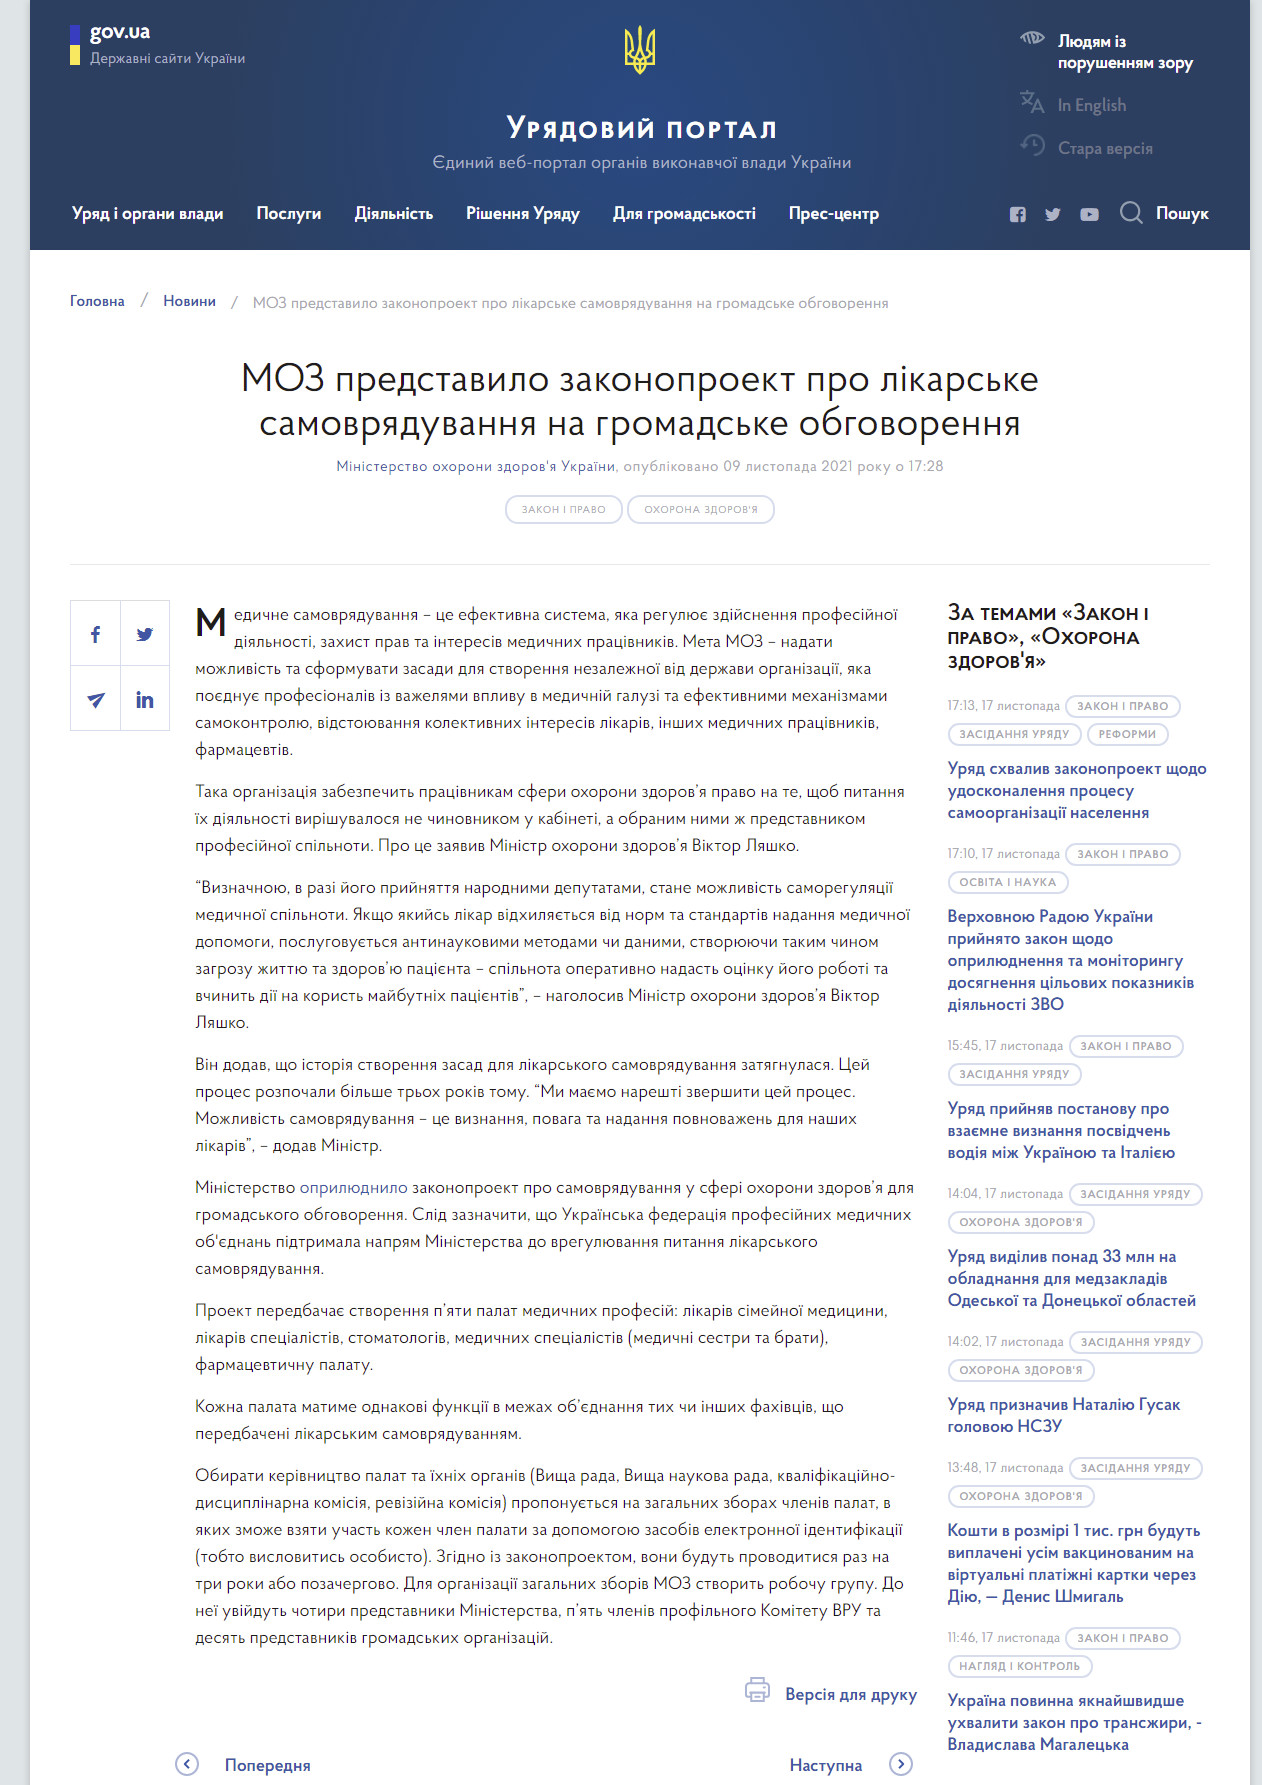 https://www.kmu.gov.ua/news/moz-predstavilo-zakonoproekt-pro-likarske-samovryaduvannya-na-gromadske-obgovorennya